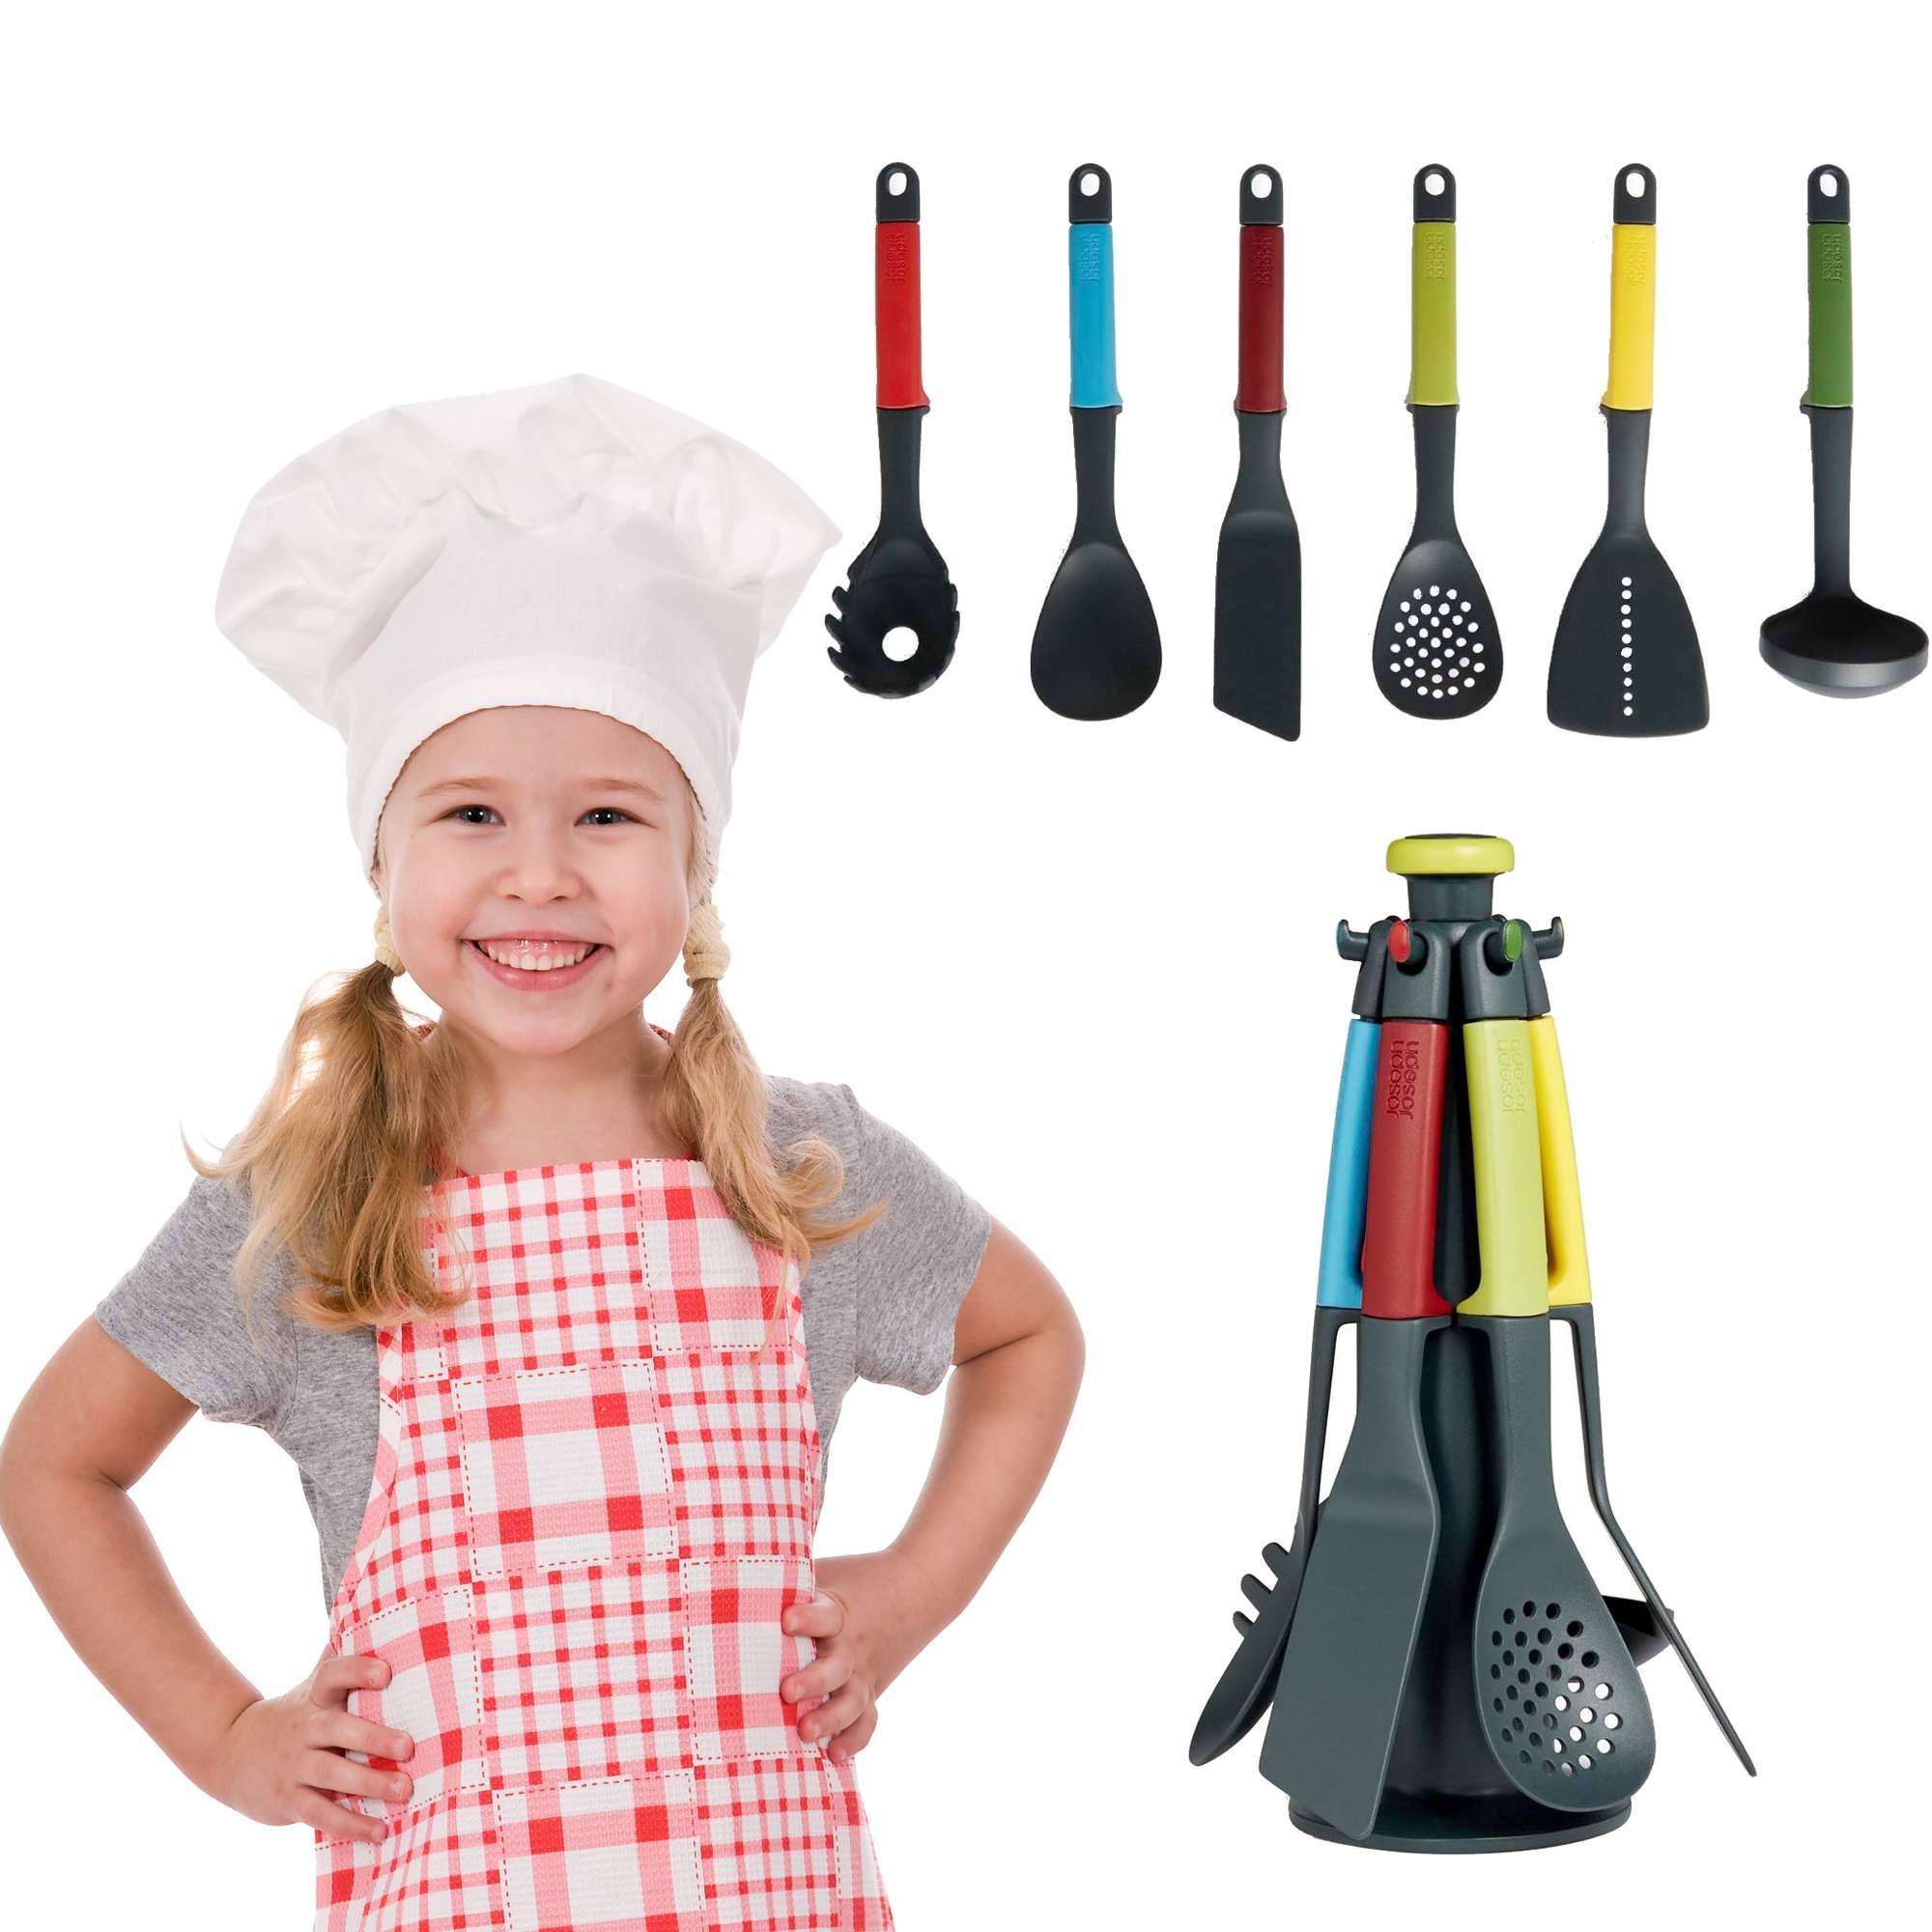 Zestaw maego kucharza kolorowe akcesoria kuchenne do gotowania dla dzieci 6 elementw Joseph Joseph elevate